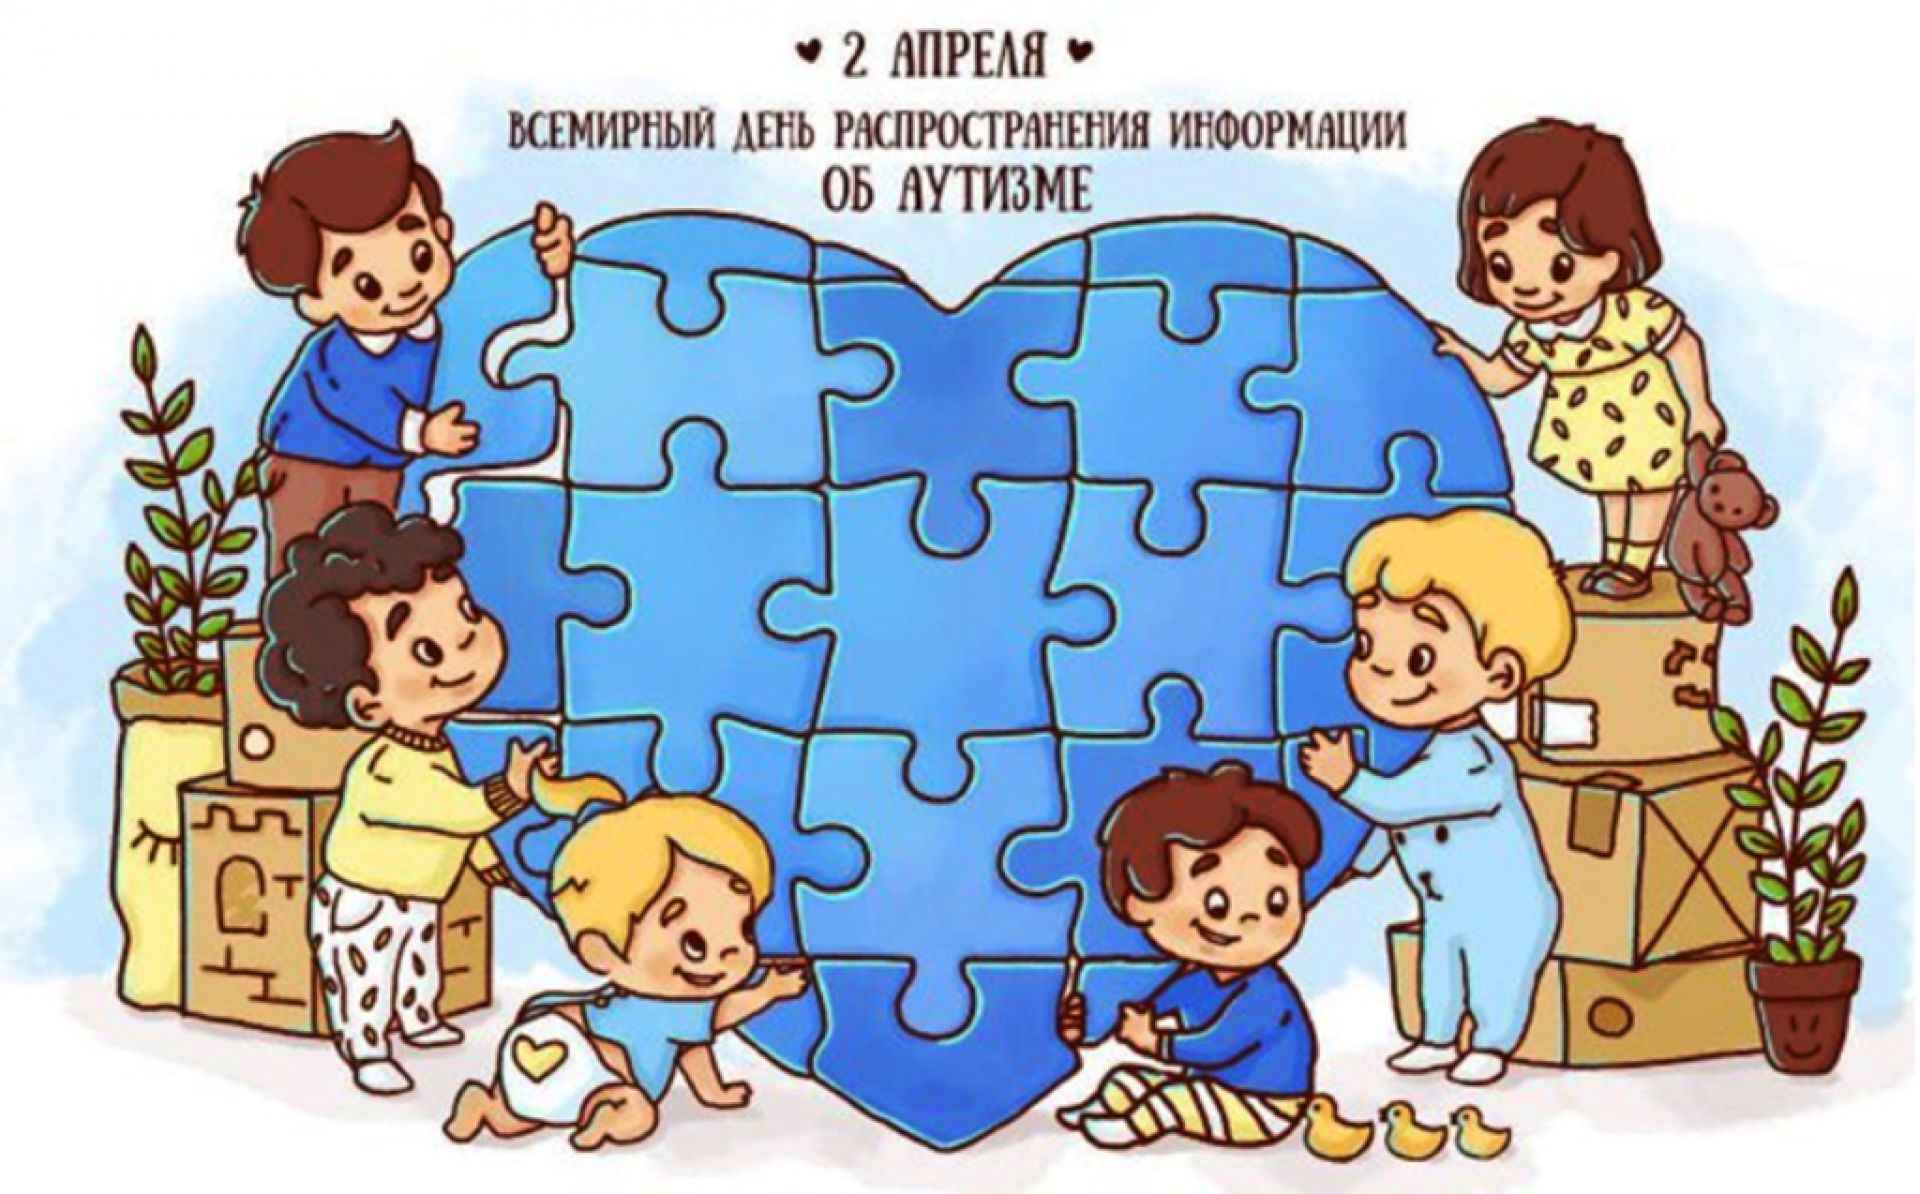 2 Апреля Всемирный день распространения информации об аутизме